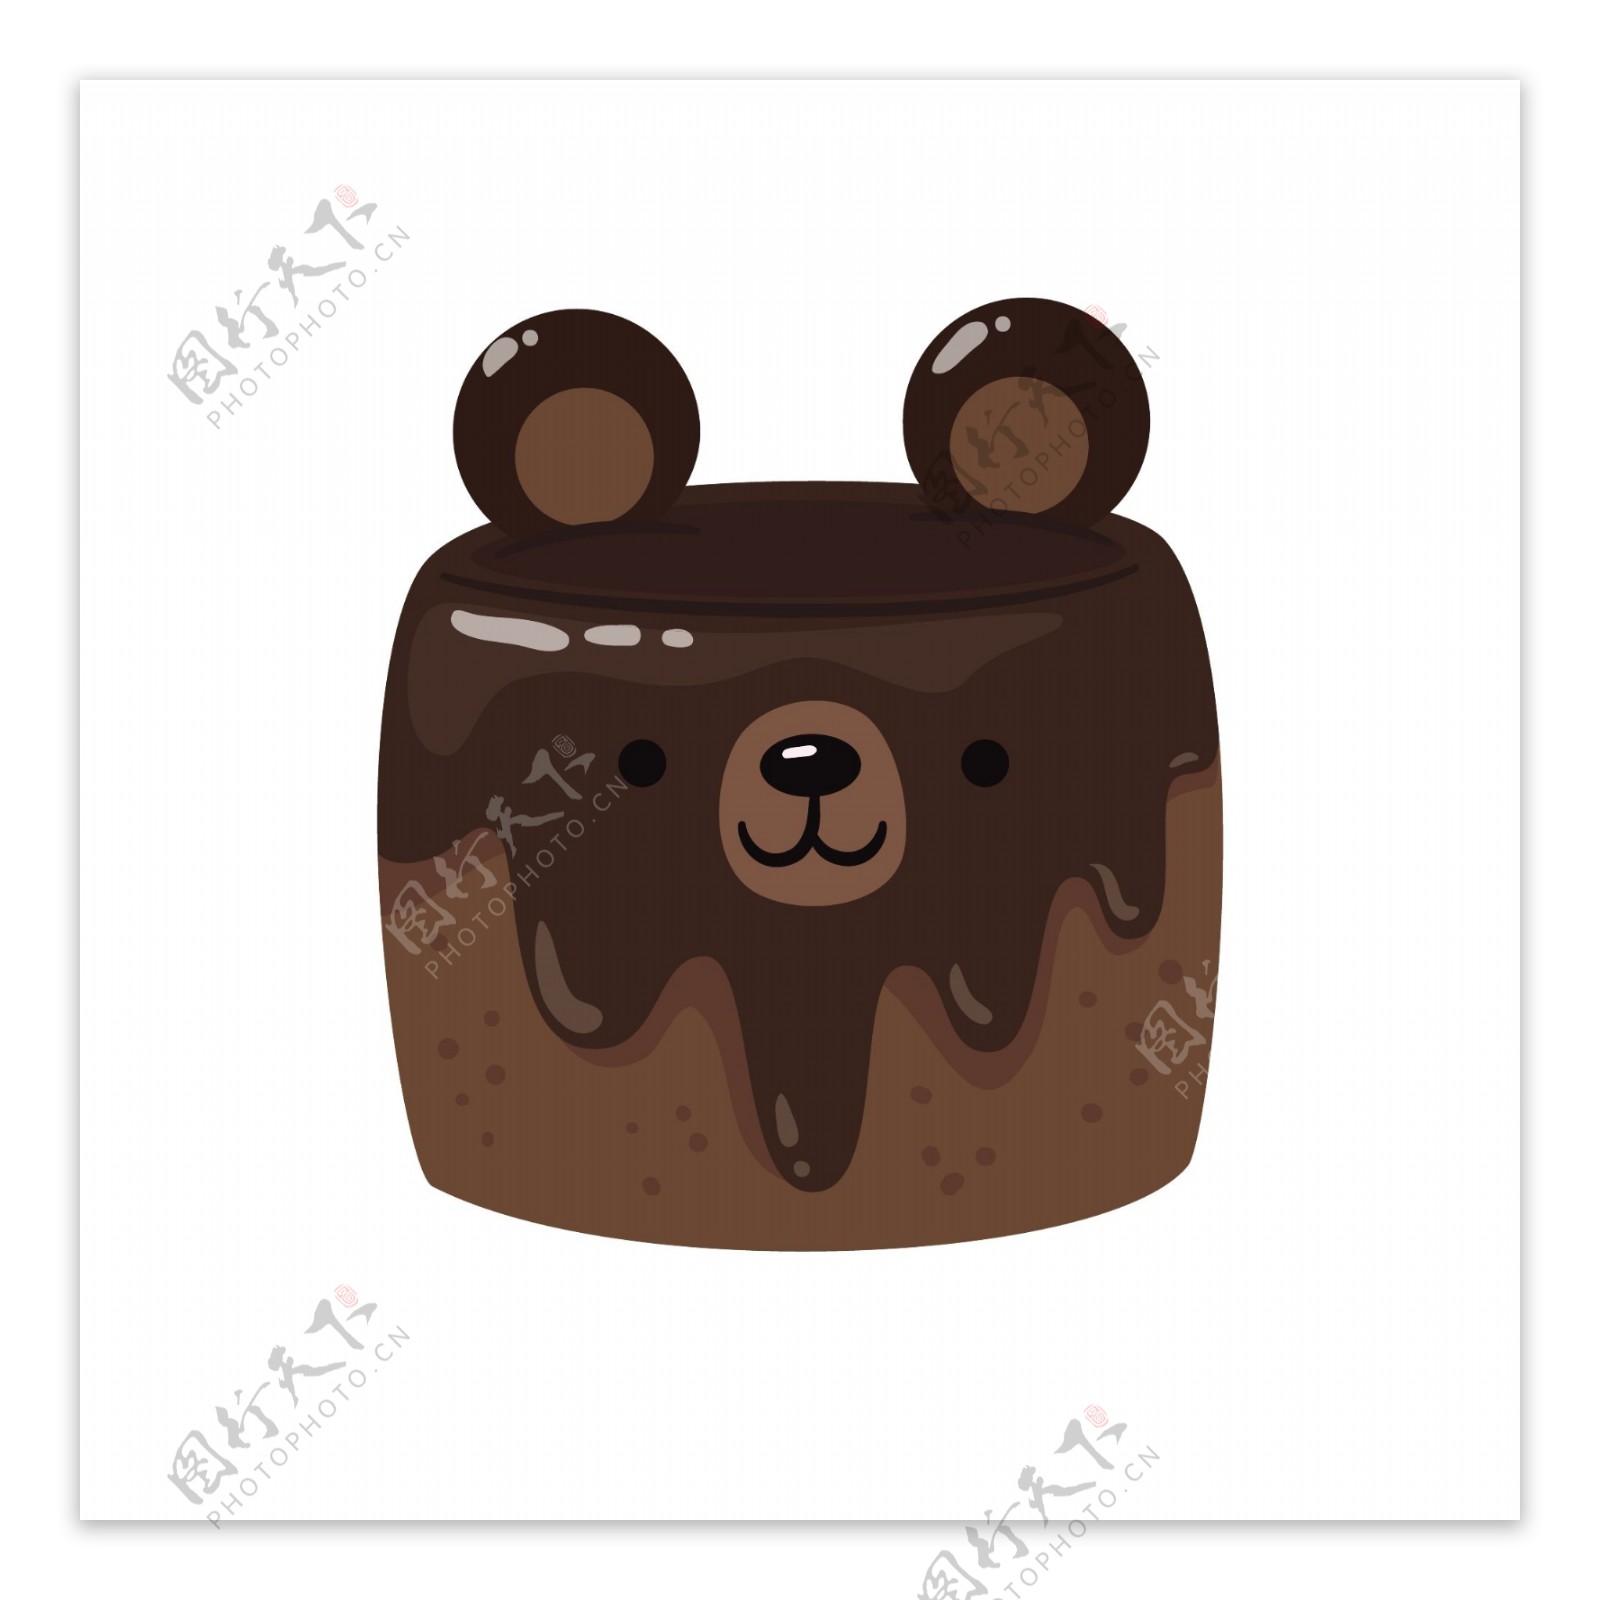 可爱小熊巧克力蛋糕矢量素材